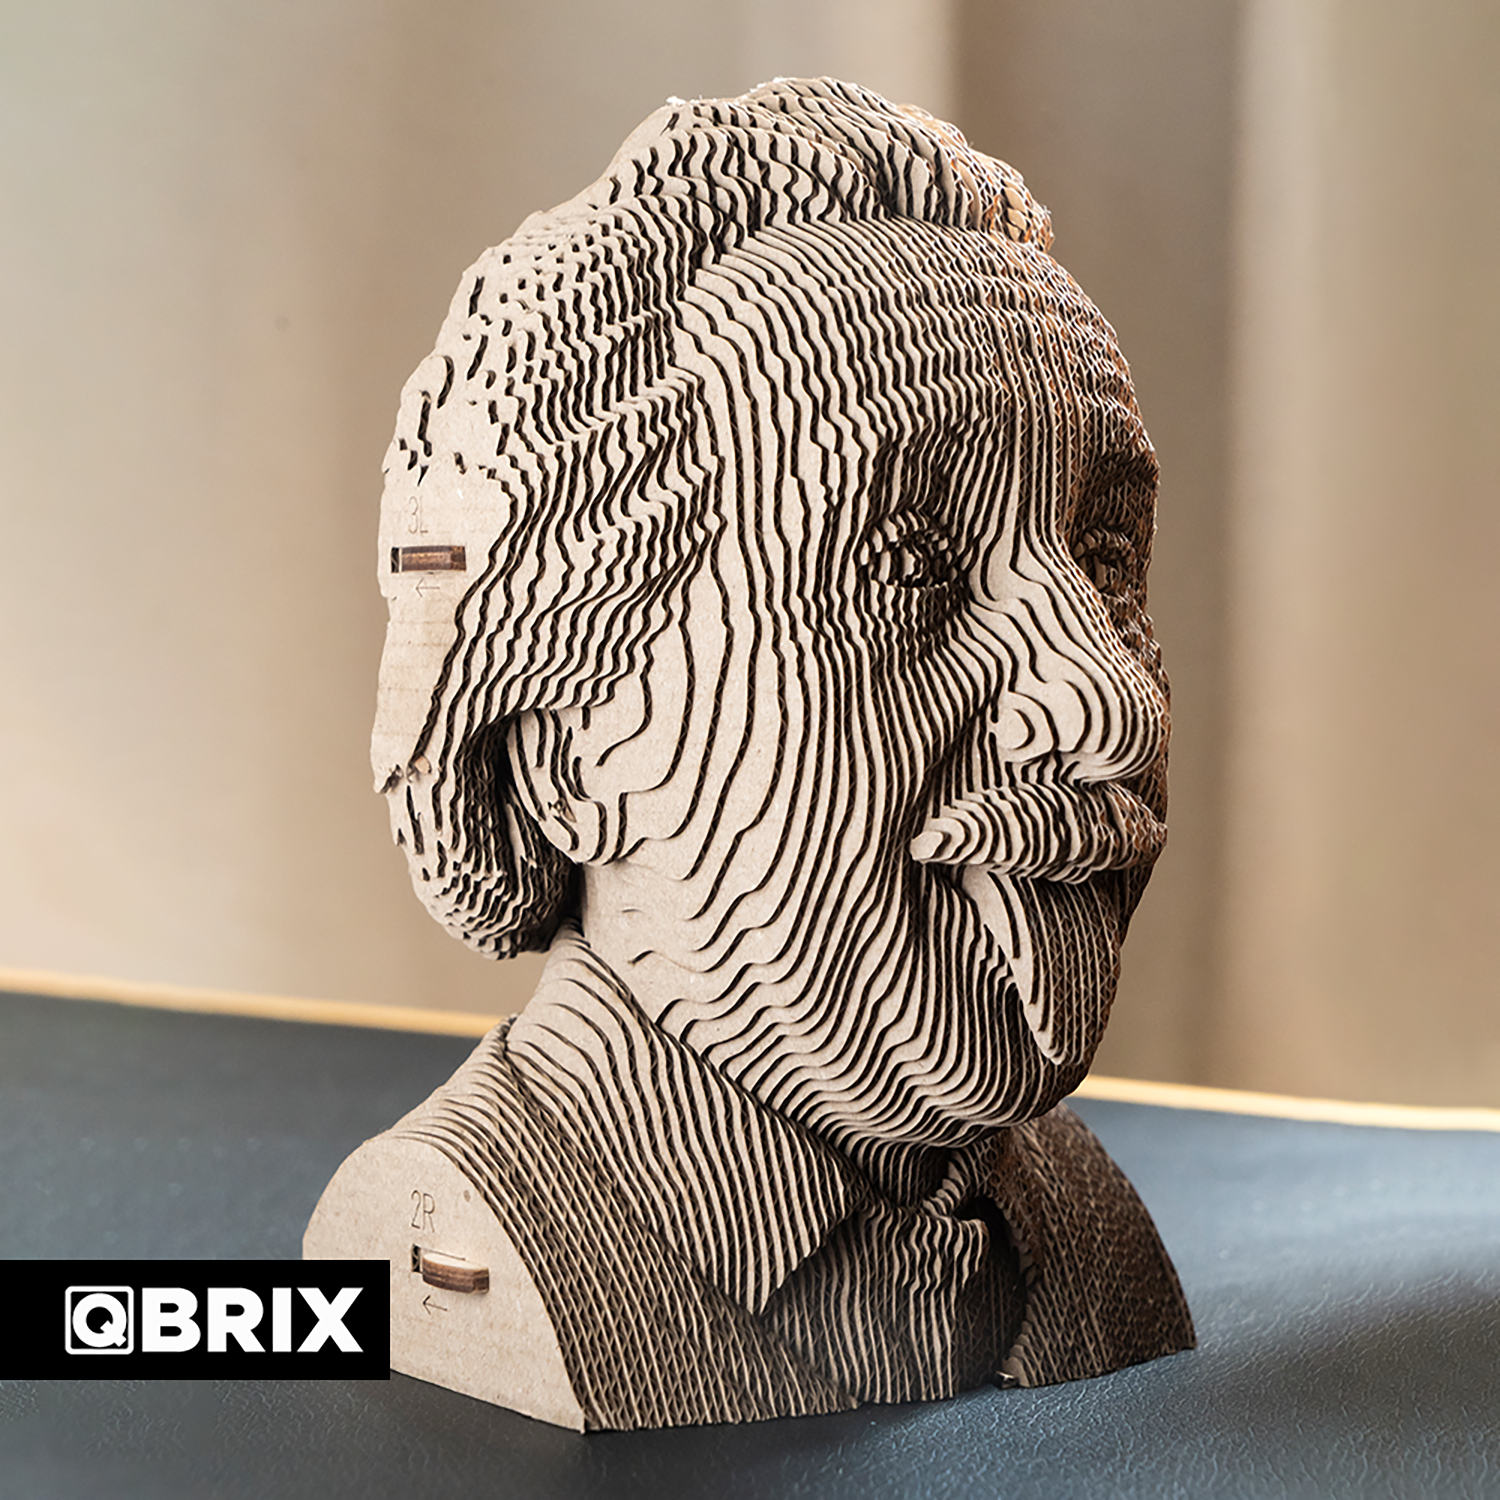 Конструктор QBRIX 3D картонный Эйнштейн 20002 20002 - фото 9